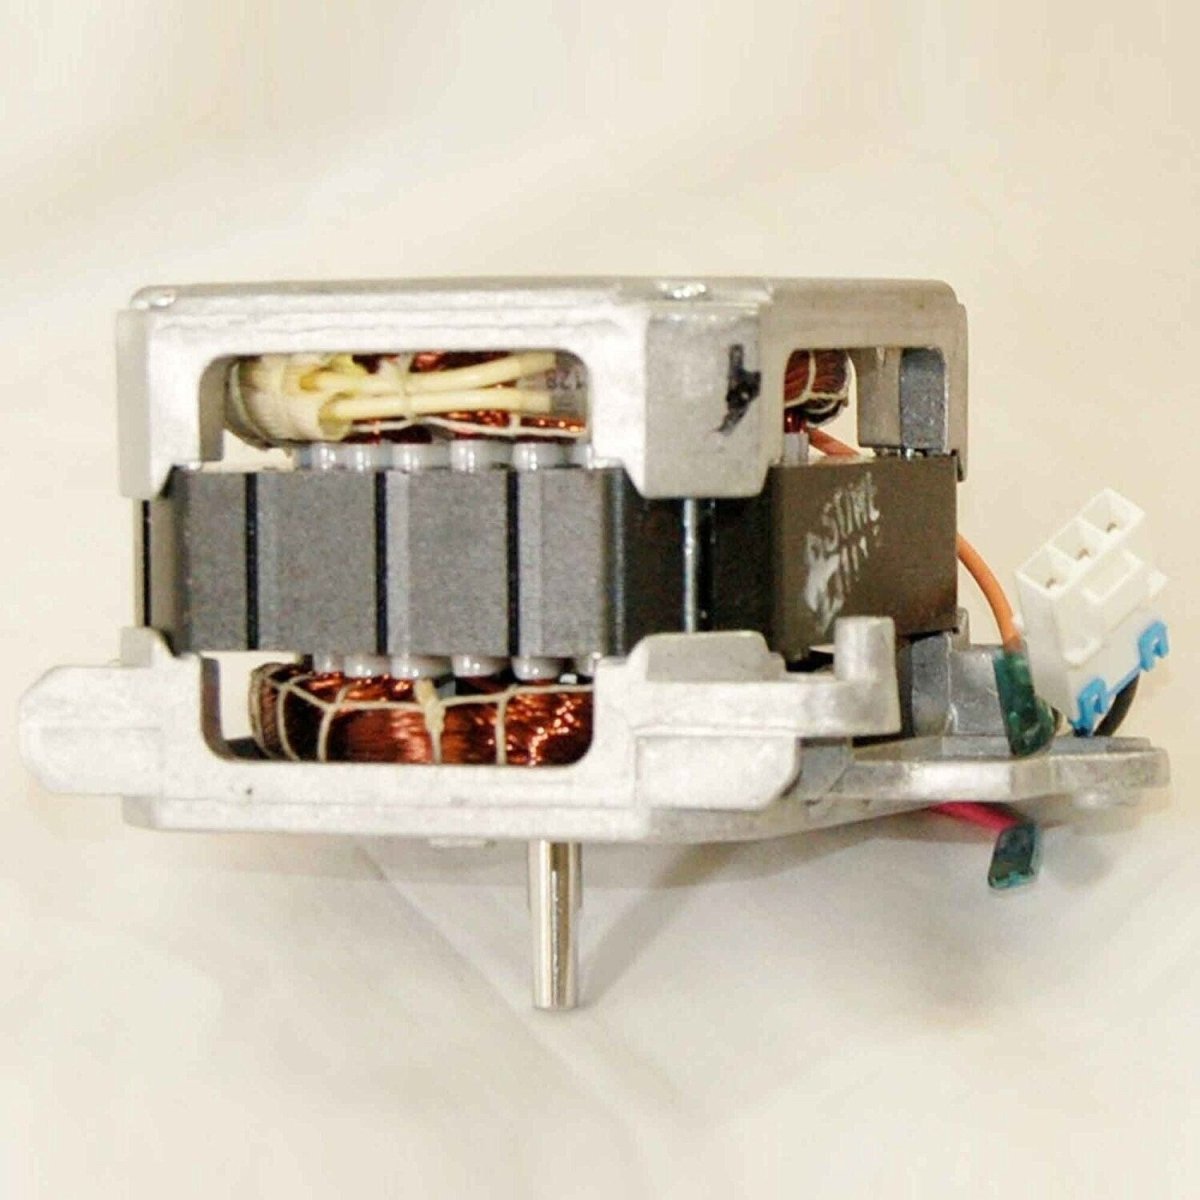 TESTED Samsung Dishwasher Circulation Pump Wash Motor DD31-00008A - ApplianceSolutionsHub